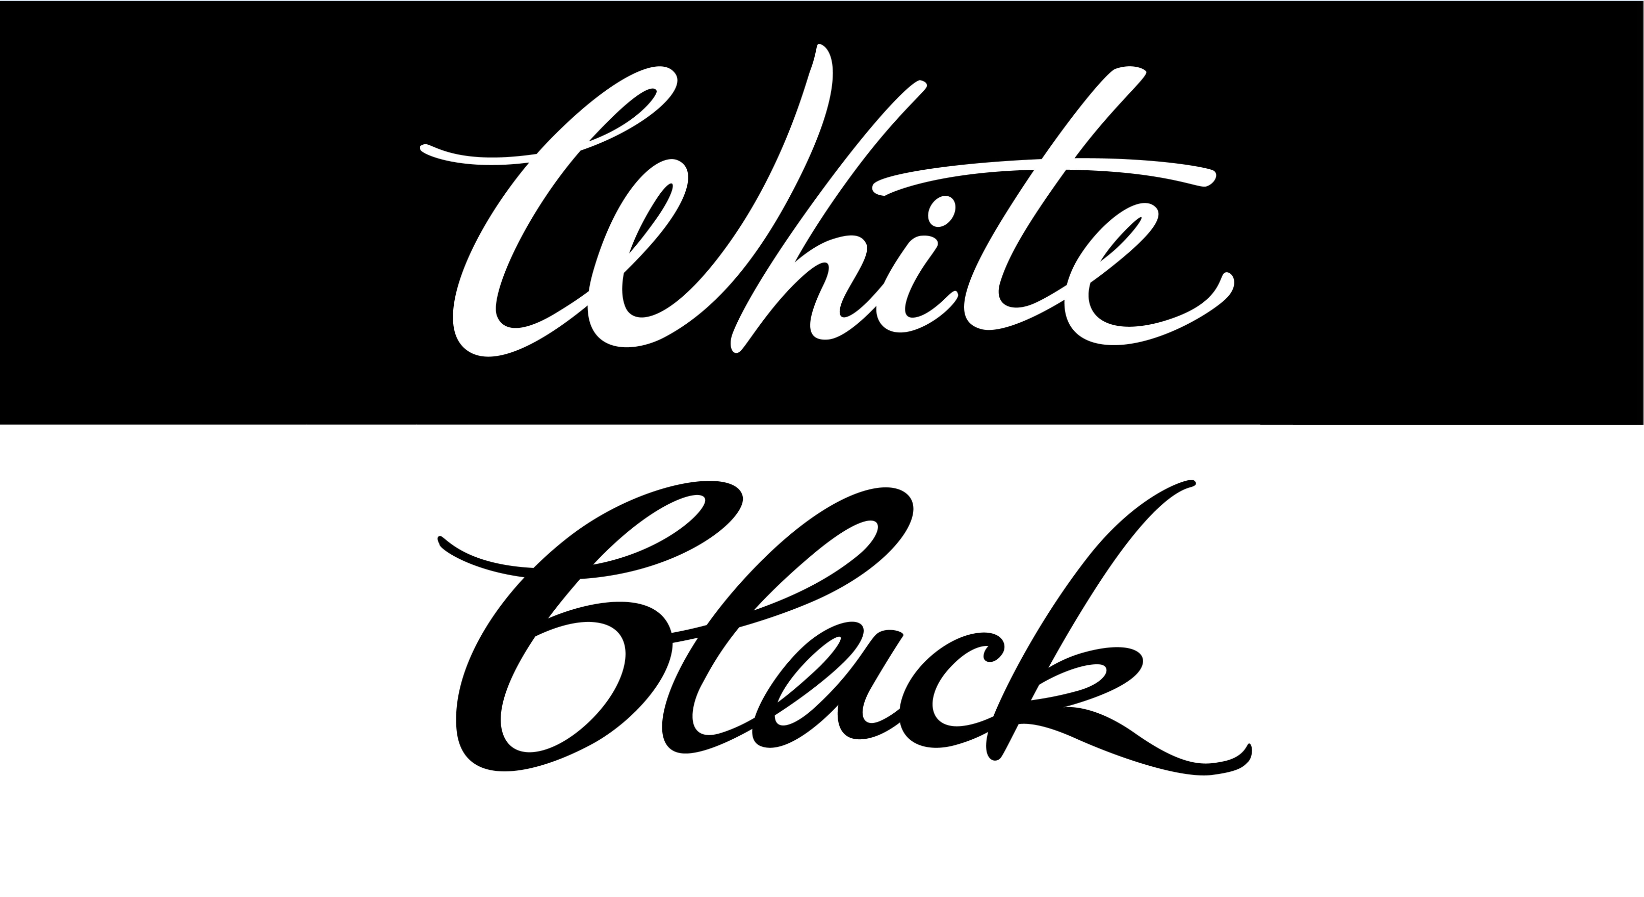 Stampante a colori o in bianco e nero: quale ti serve?